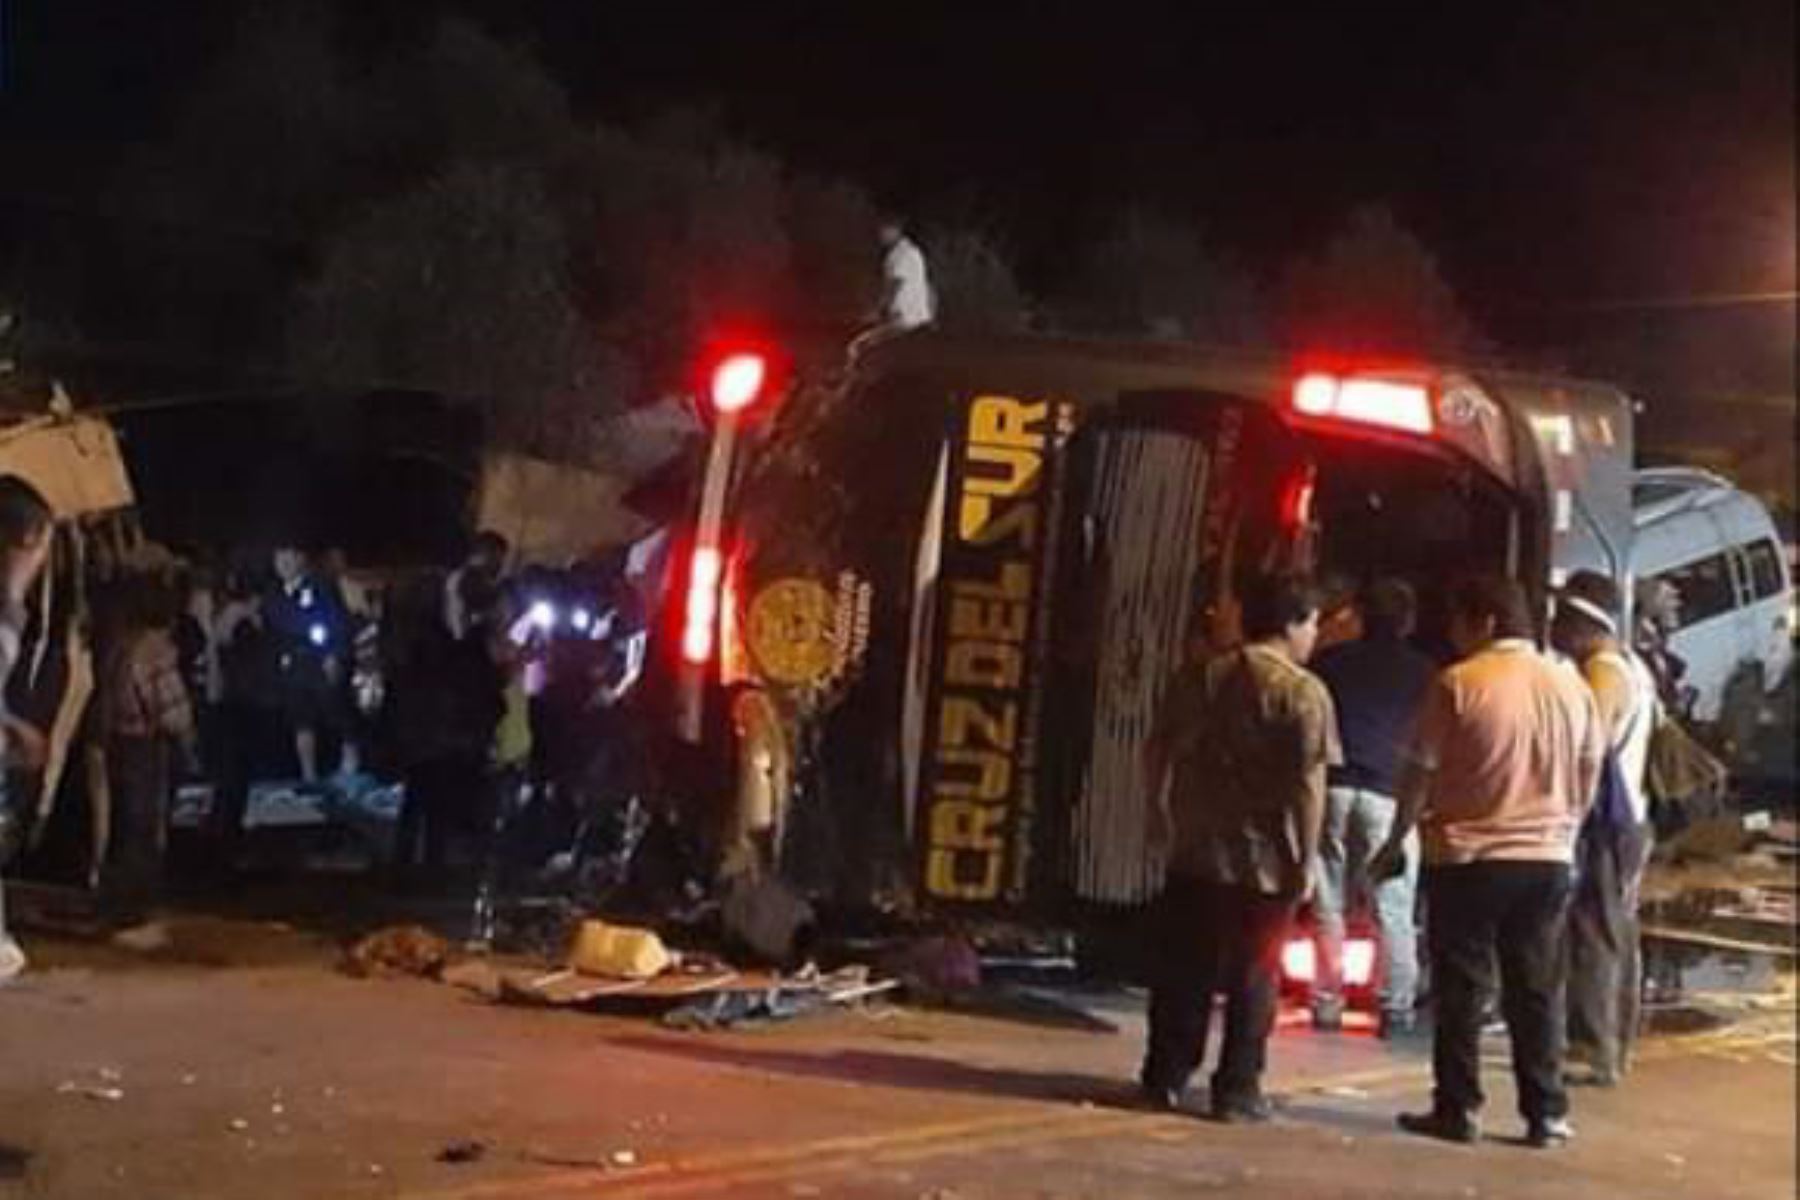 Juez ordenó 9 meses de prisión preventiva para chofer de bus de Cruz del Sur por trágico accidente en Arequipa que causó la muerte de 16 personas. Foto: Arequipa Play/Twitter